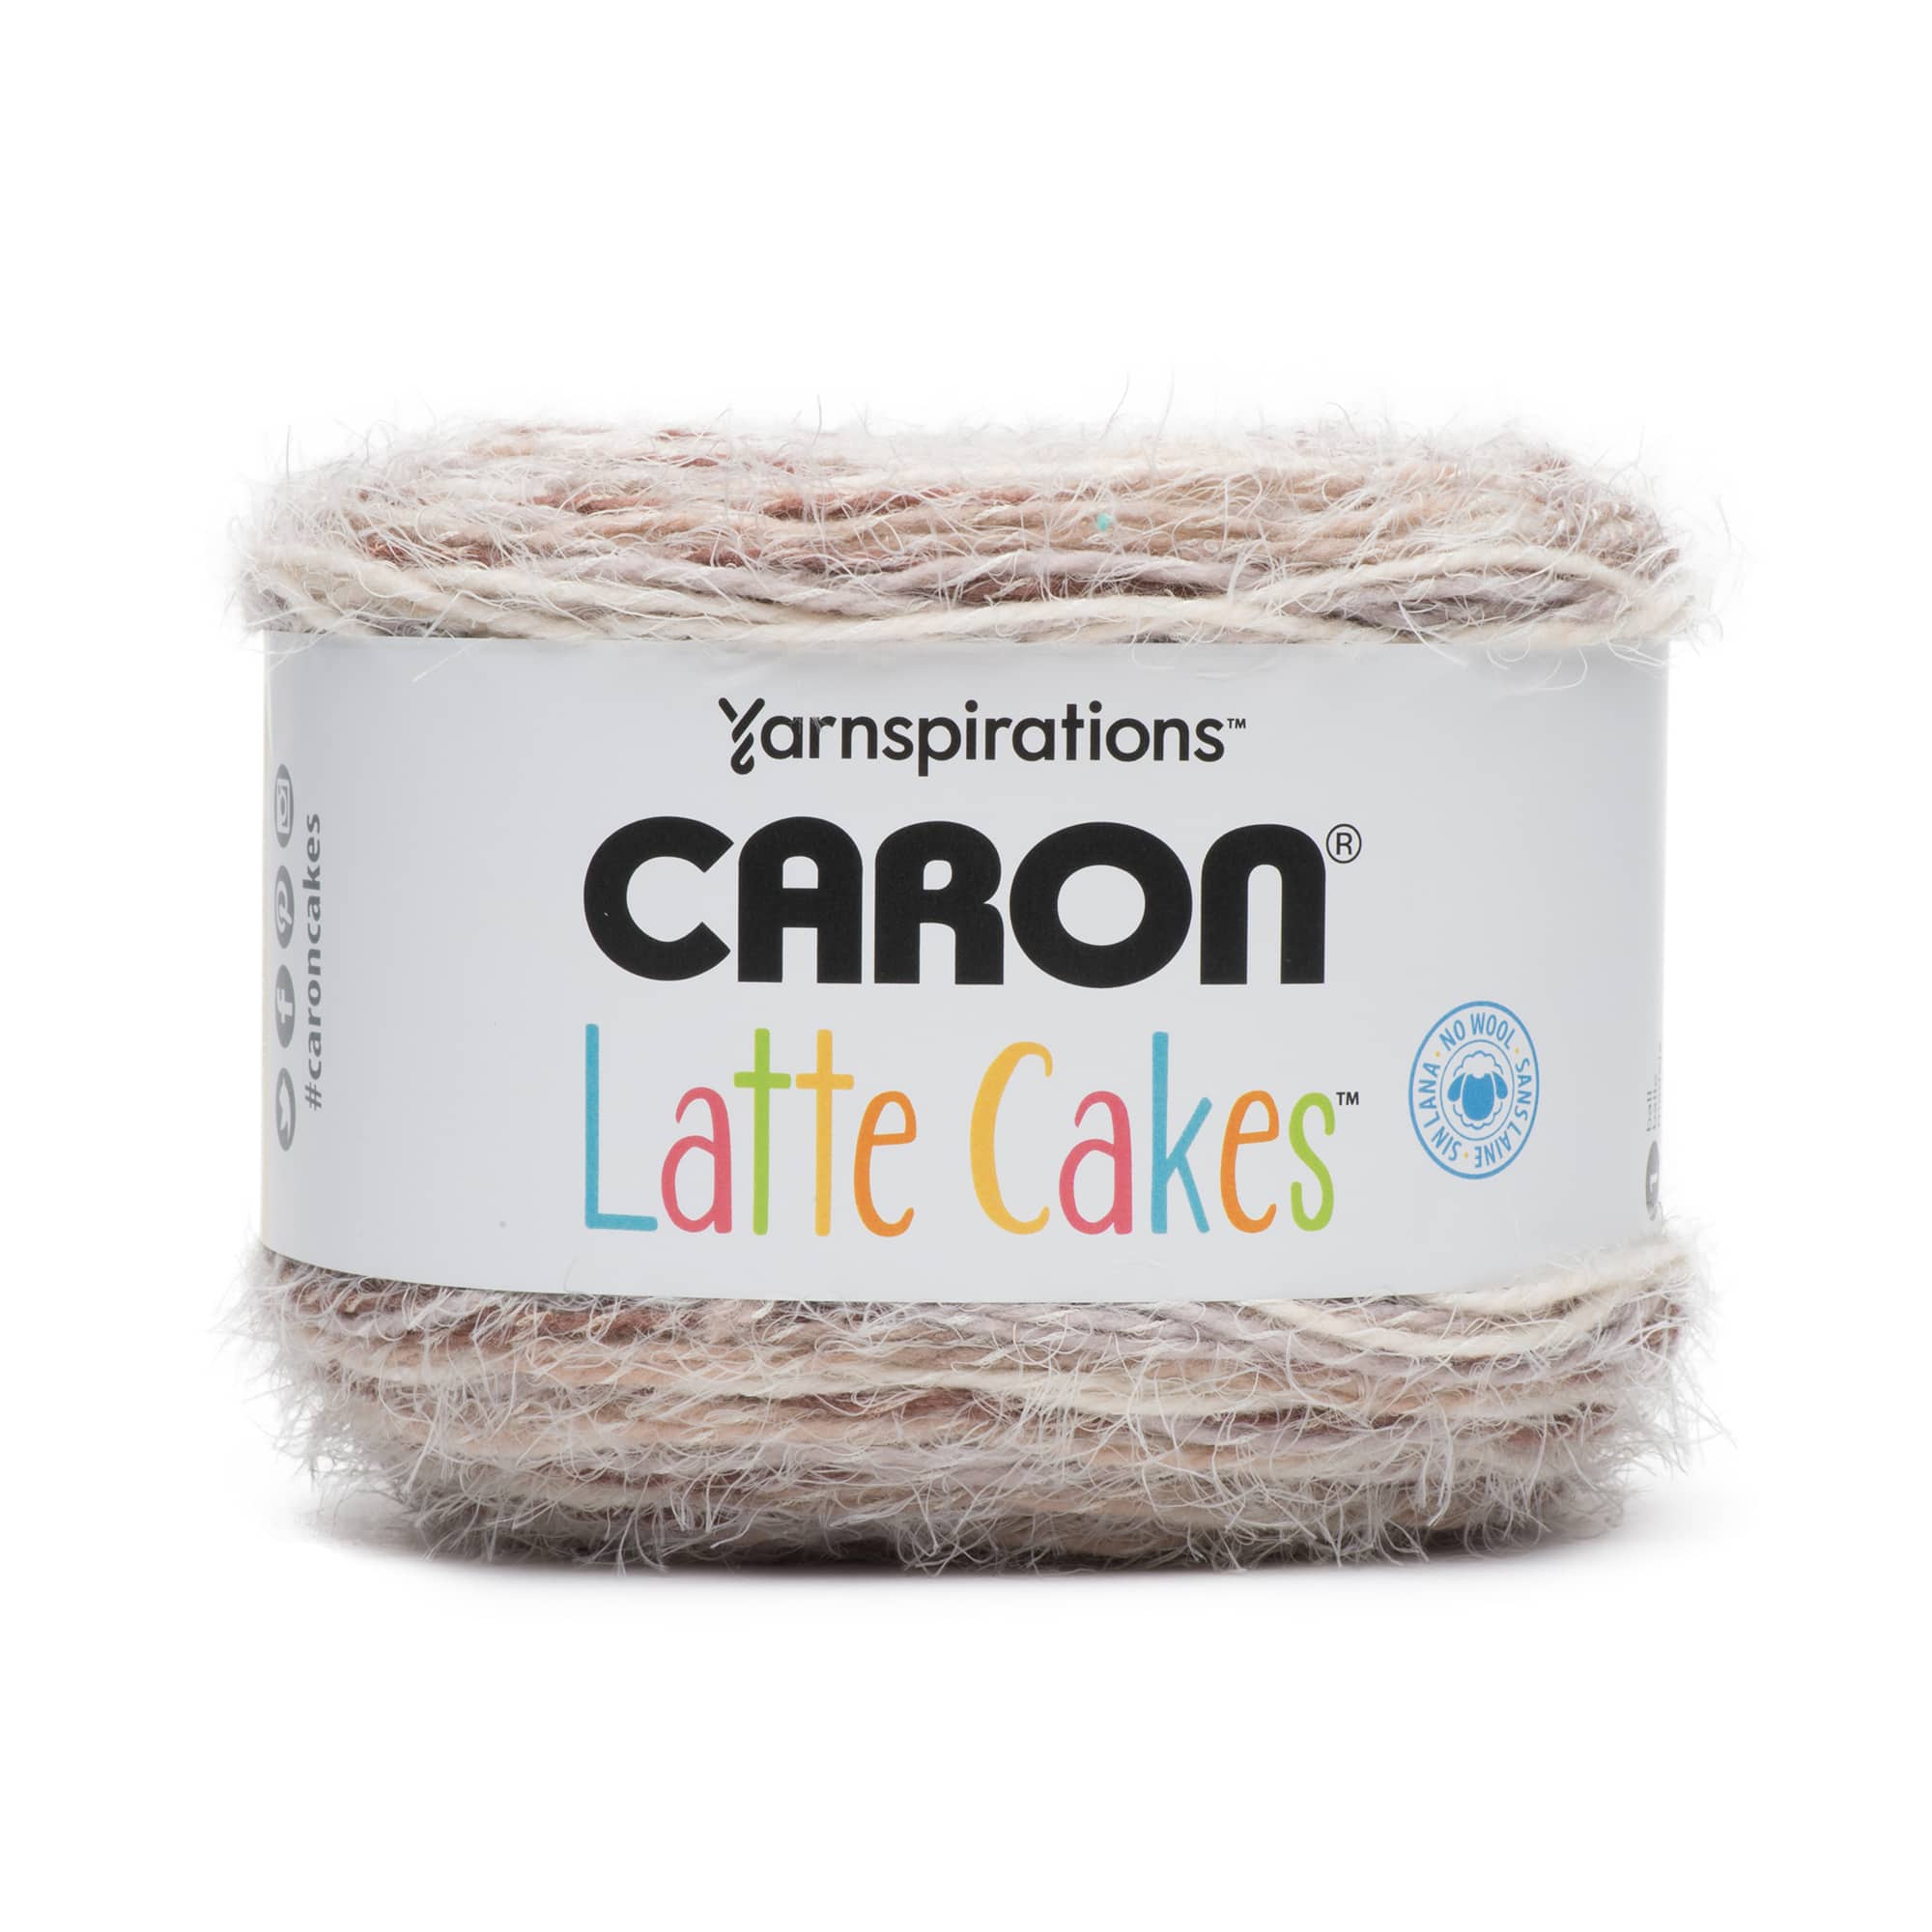 Caron Cloud Cakes Yarn in Sun/Sea | 8.5 oz | Michaels